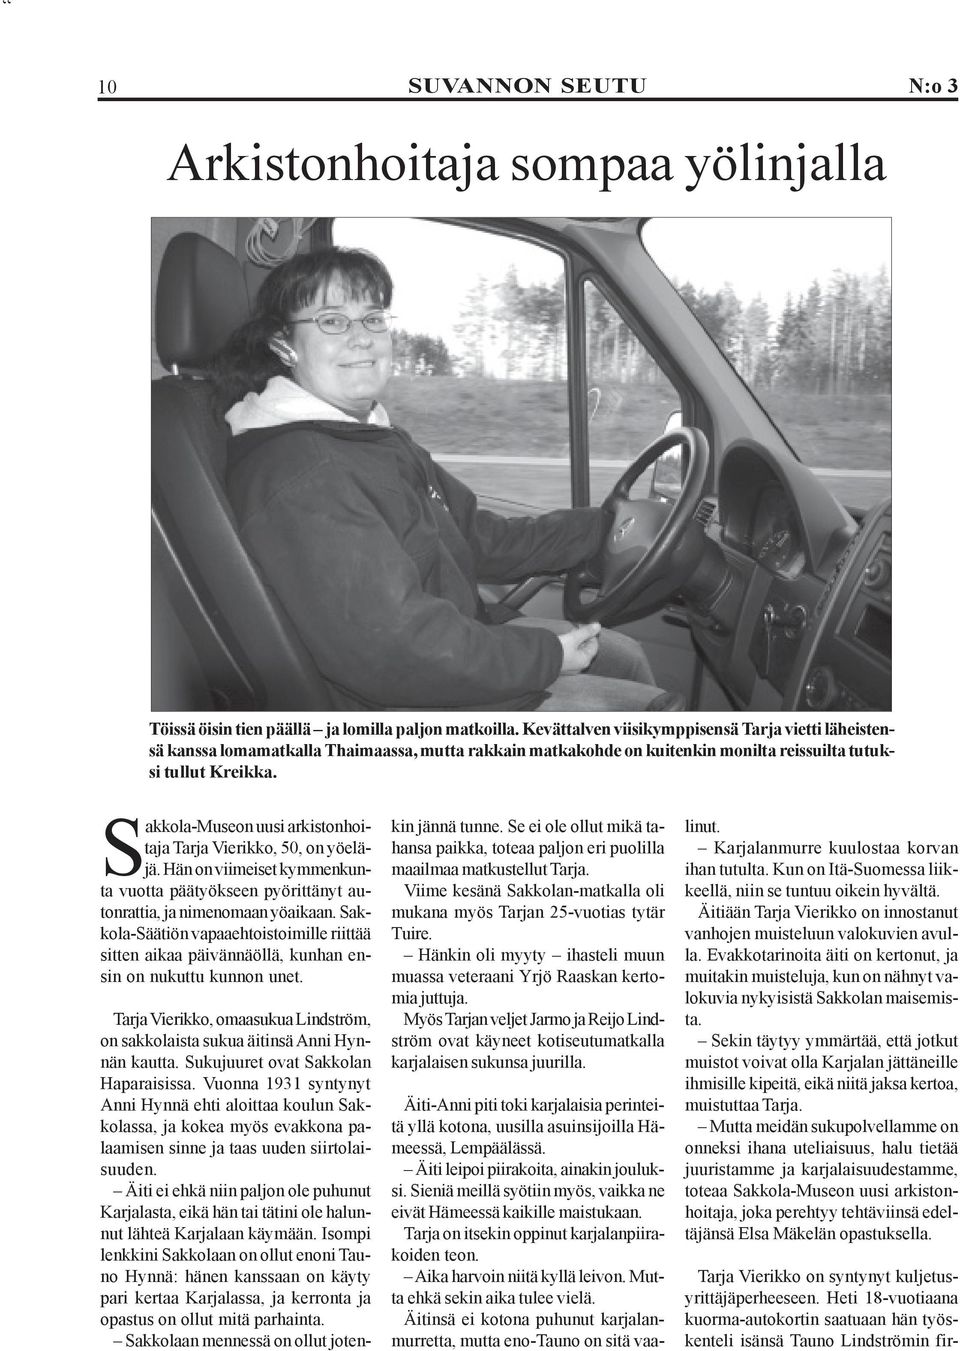 Sakkola-Museon uusi arkistonhoitaja Tarja Vierikko, 50, on yöeläjä. Hän on viimeiset kymmenkunta vuotta päätyökseen pyörittänyt autonrattia, ja nimenomaan yöaikaan.